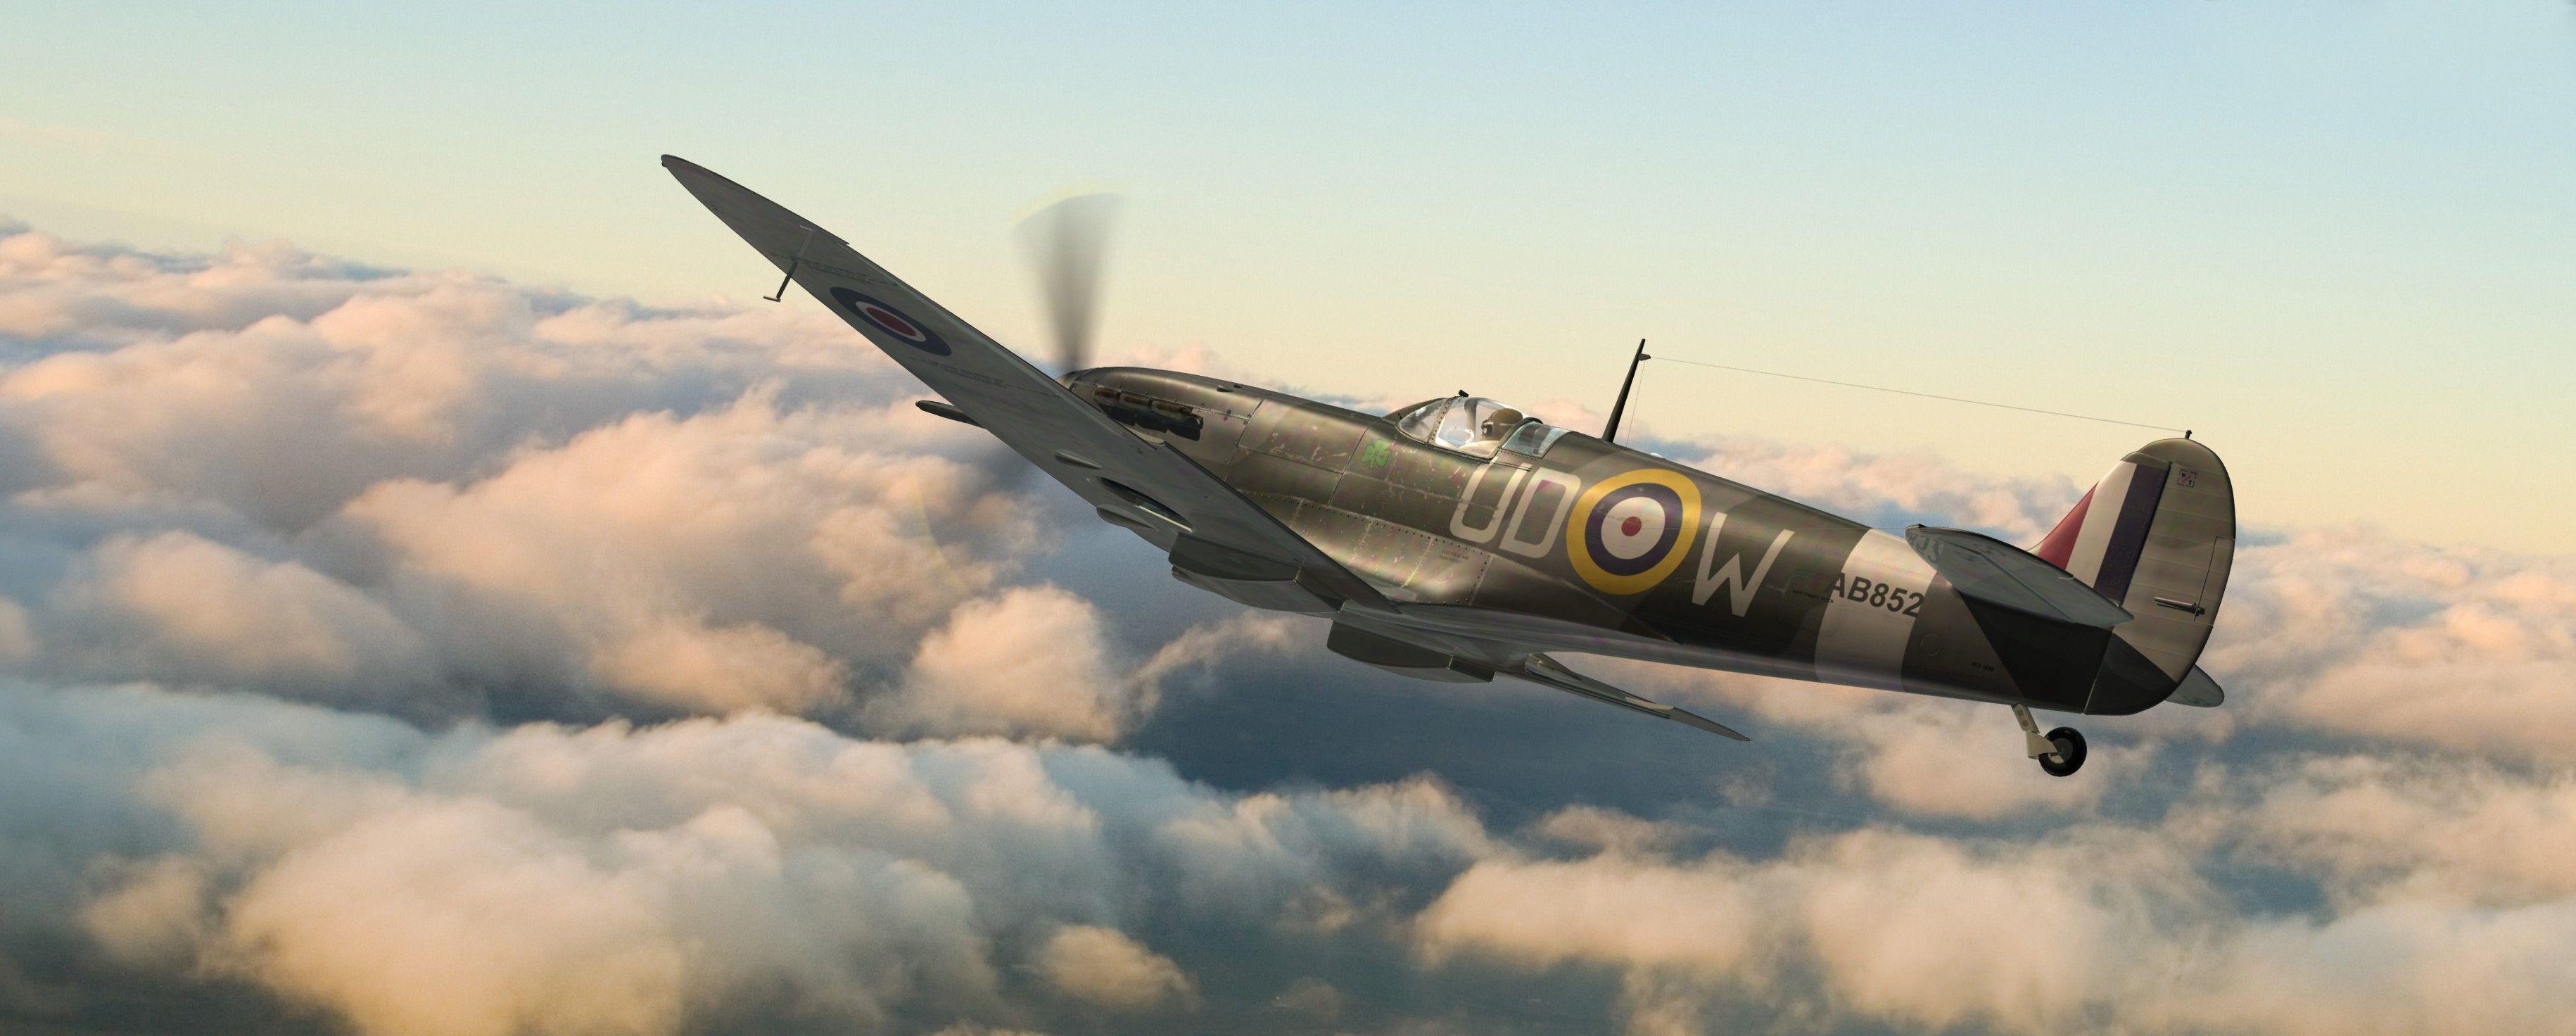 Wallpaper  1600x880 px Battle of Britain dogfight Messerschmitt Bf 109  Supermarine Spitfire Tallyho 1600x880  wallhaven  1300503  HD Wallpapers   WallHere